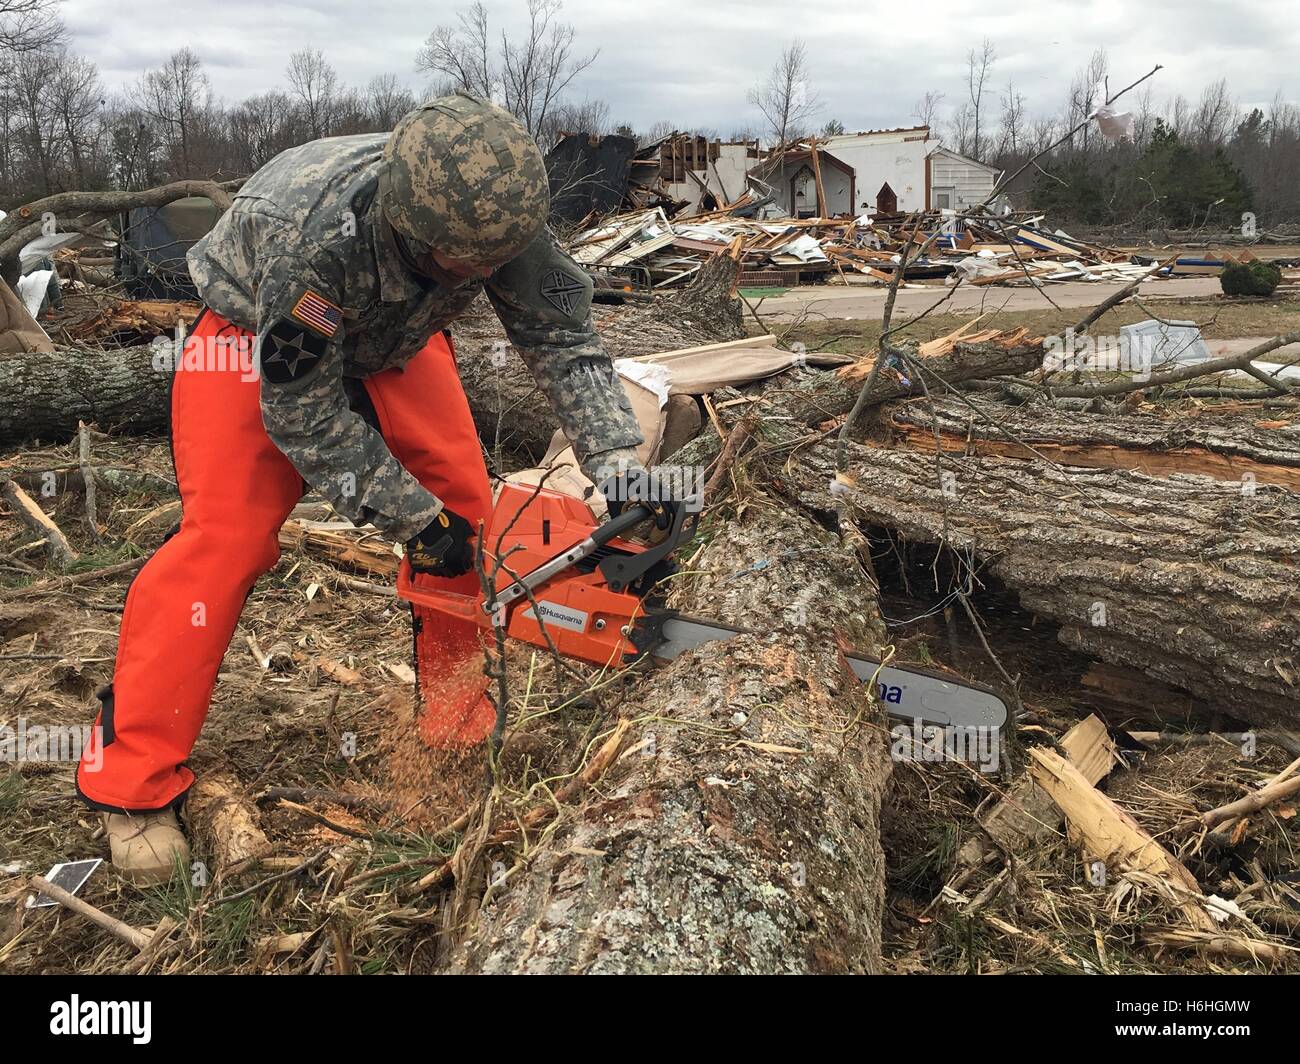 Soldados de la Guardia Nacional que talar los árboles caídos y quitar escombros para abrir un bloqueo de la carretera después de una fuerte tormenta y el tornado, el 25 de febrero de 2016 en el condado de Essex, Virginia. Foto de stock